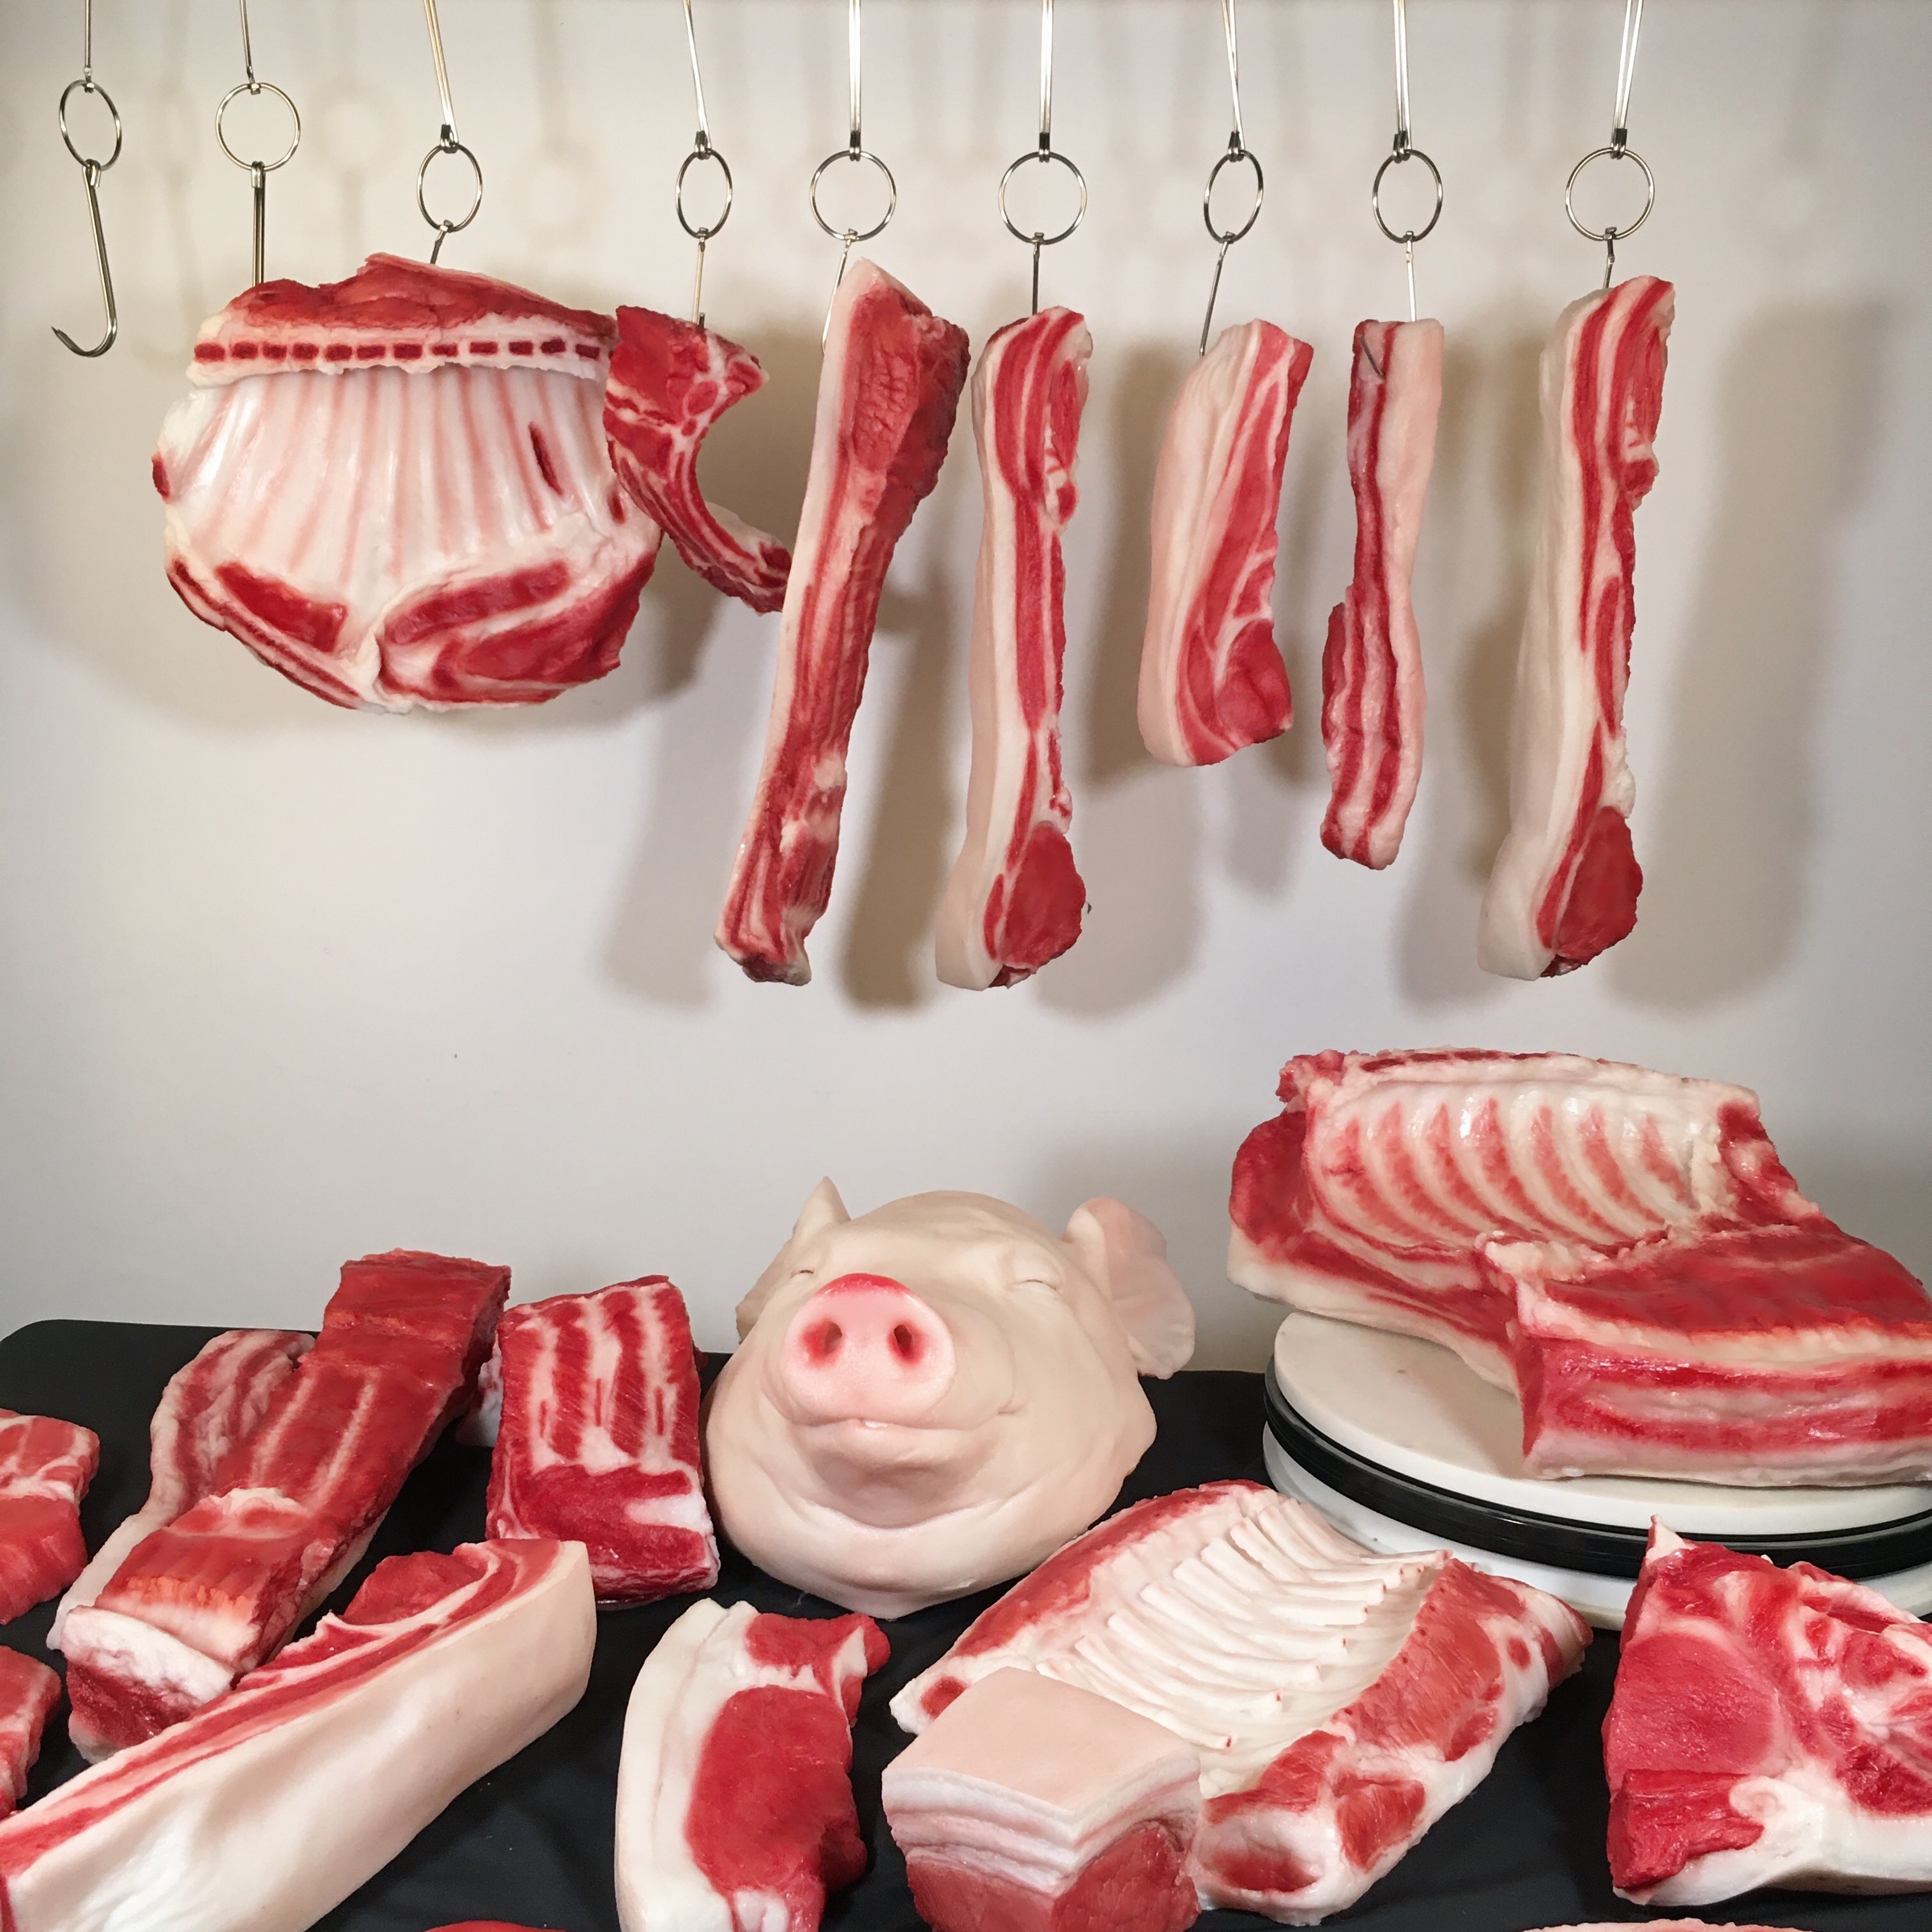 仿真猪肉模型生肉道具五花肉食物羊肉摆件展厅橱窗冷柜用品假猪头